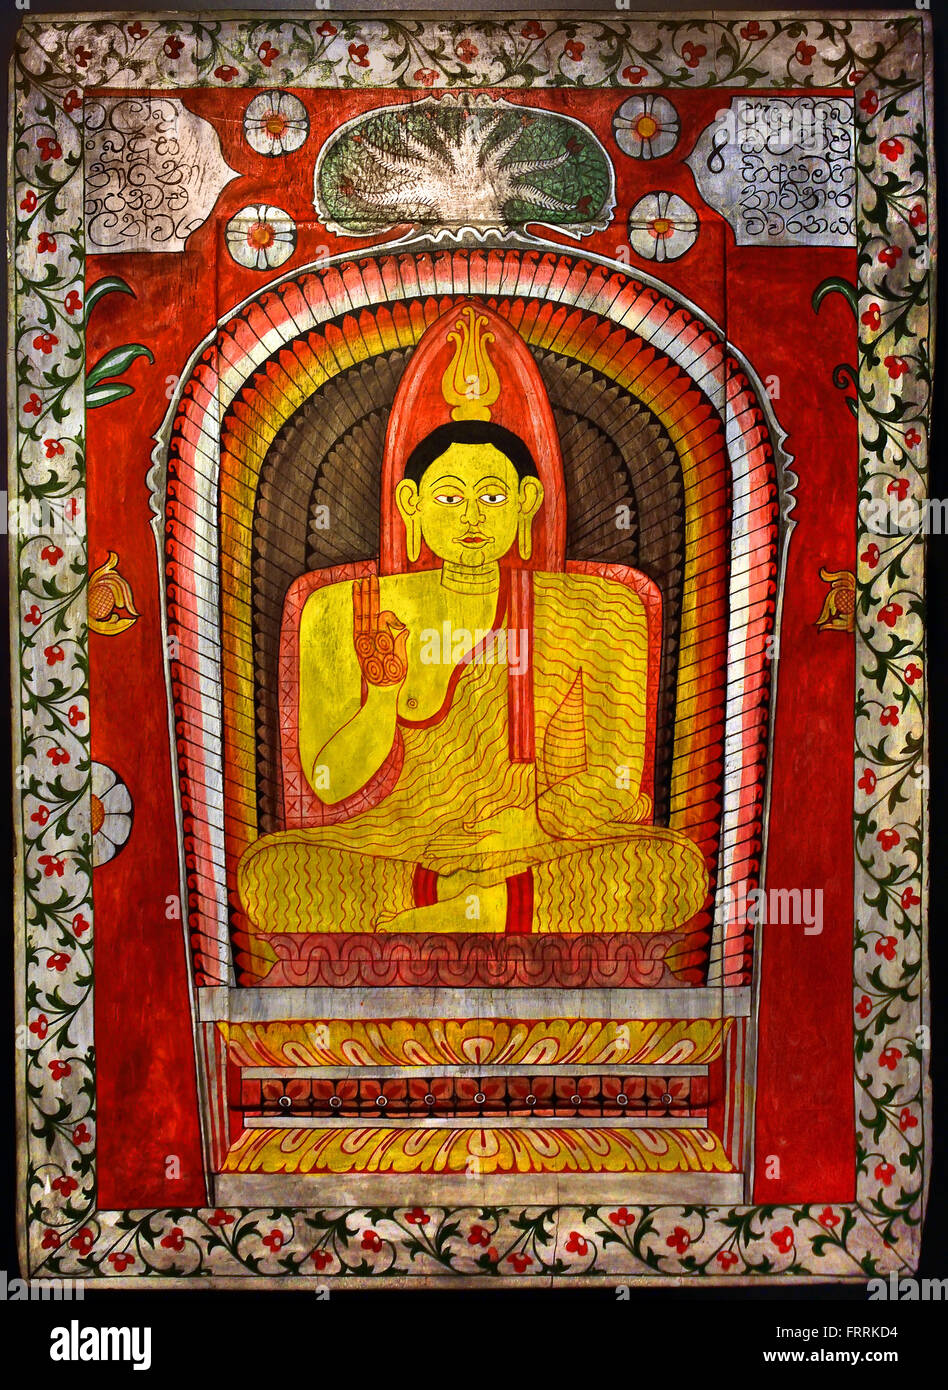 Vitarka mudra ( Bouddha moderne - Enseignement de part la posture ) peinture sur bois Galle Sri Lanka Banque D'Images